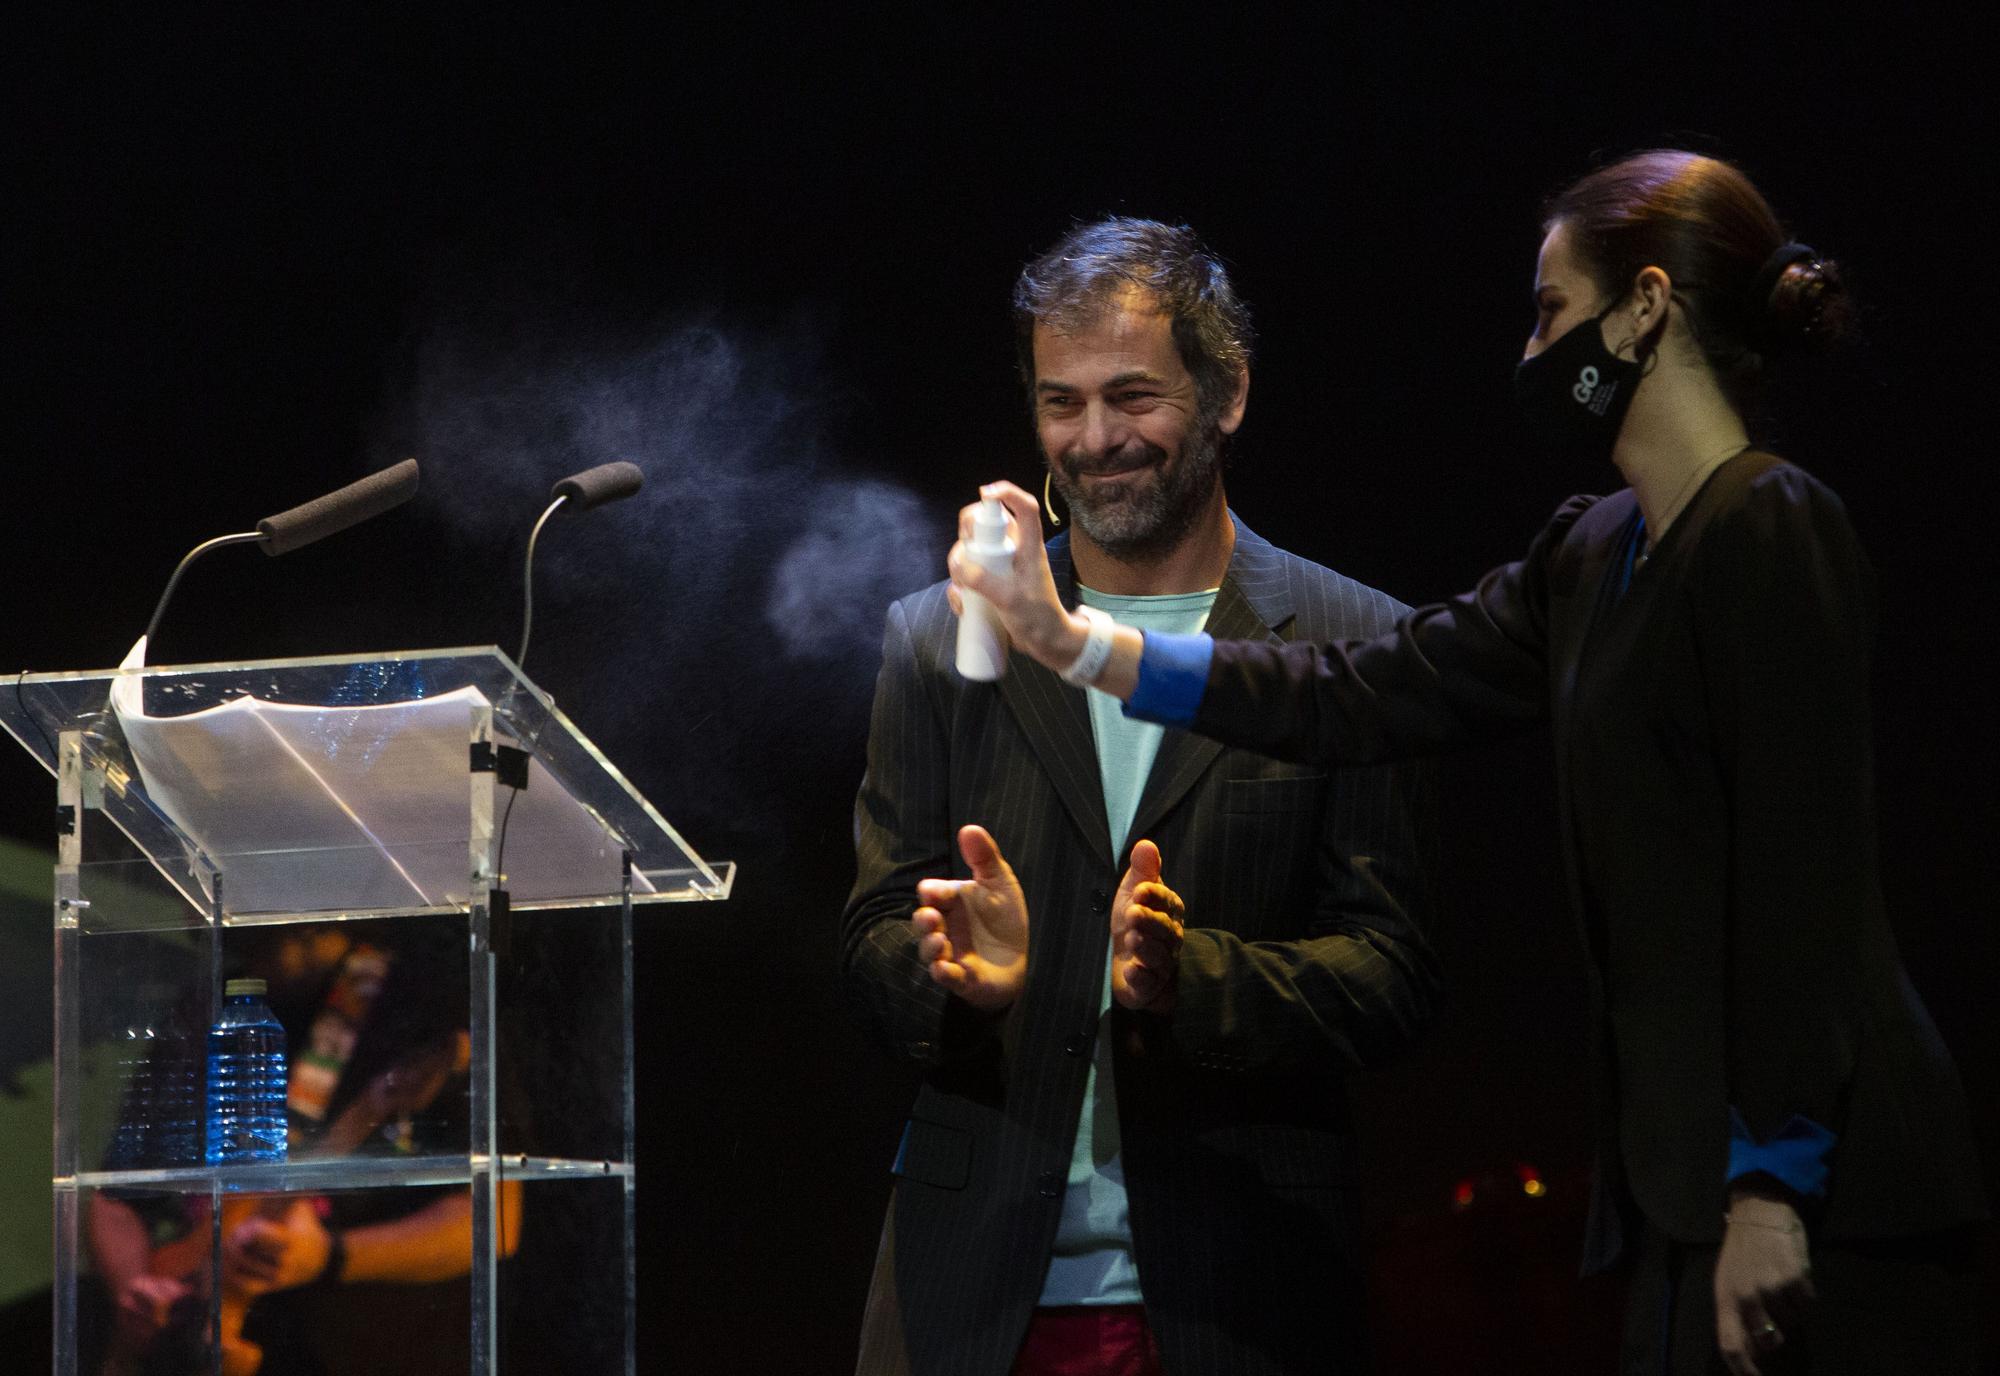 José Estruch Awards Gala at the Teatro Principal in Alicante